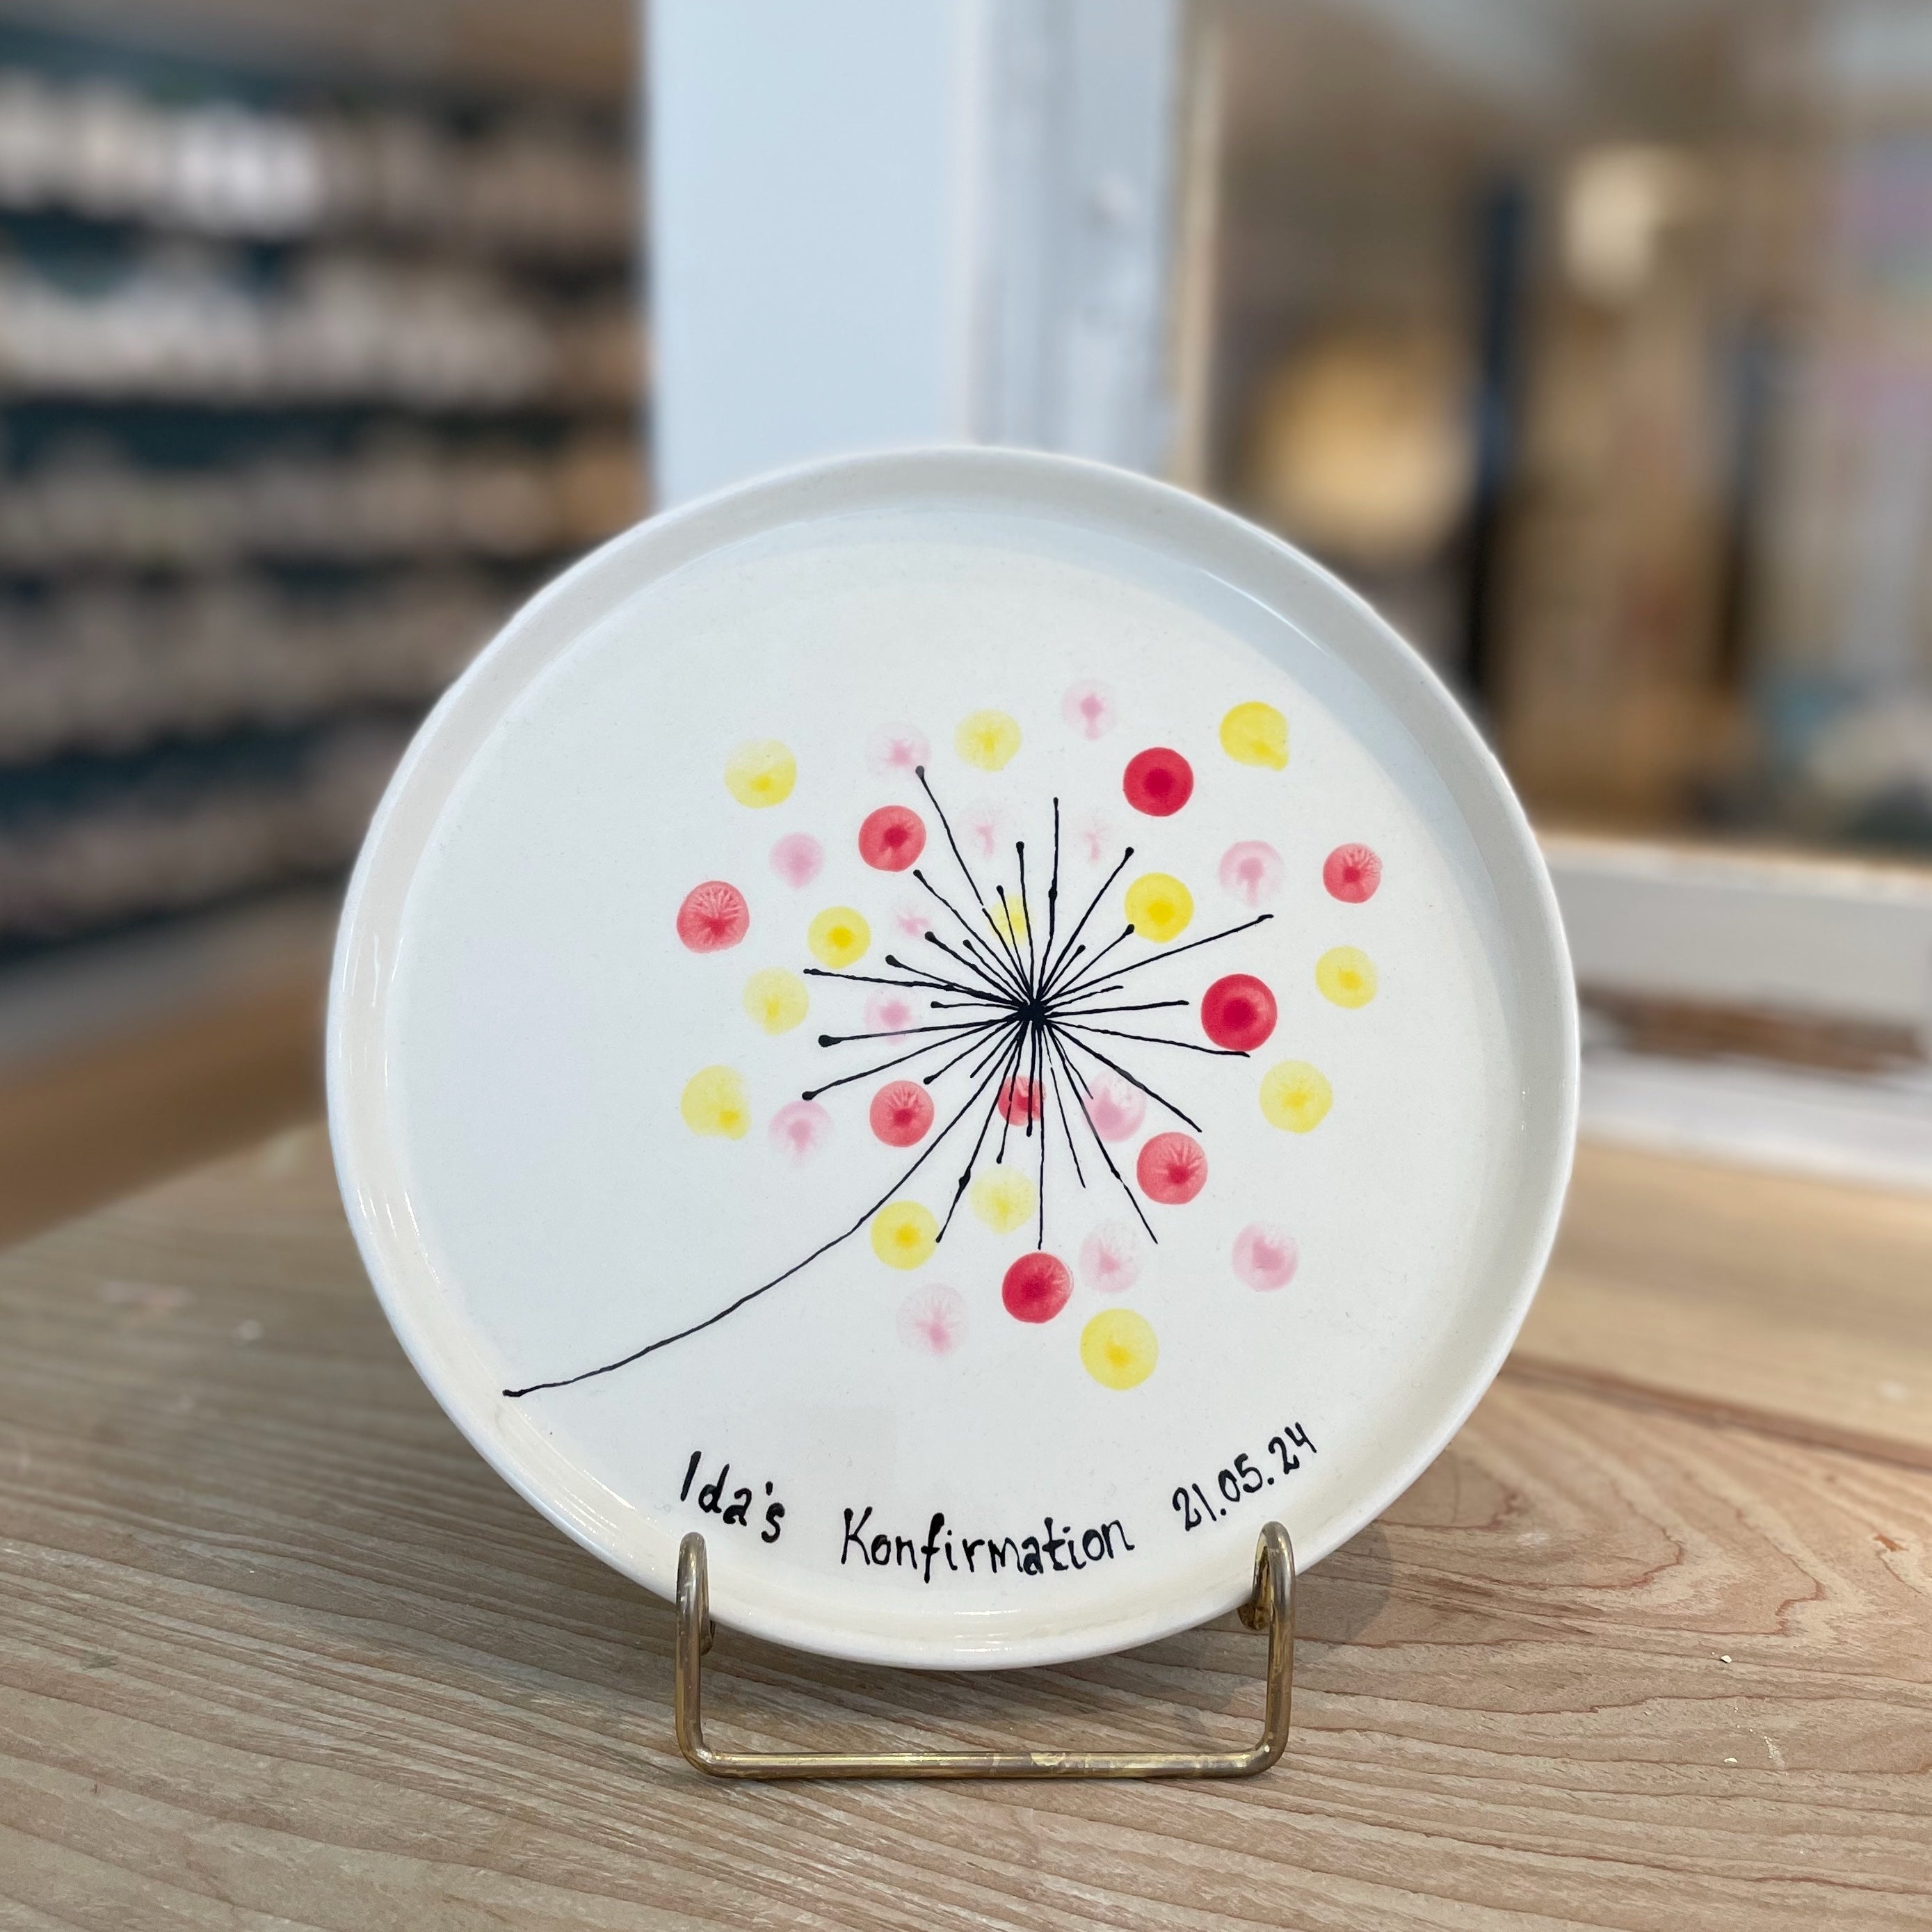 Keramik tallerken med fingertryks optegning af mælkebøtte perfekt til alle anledninger